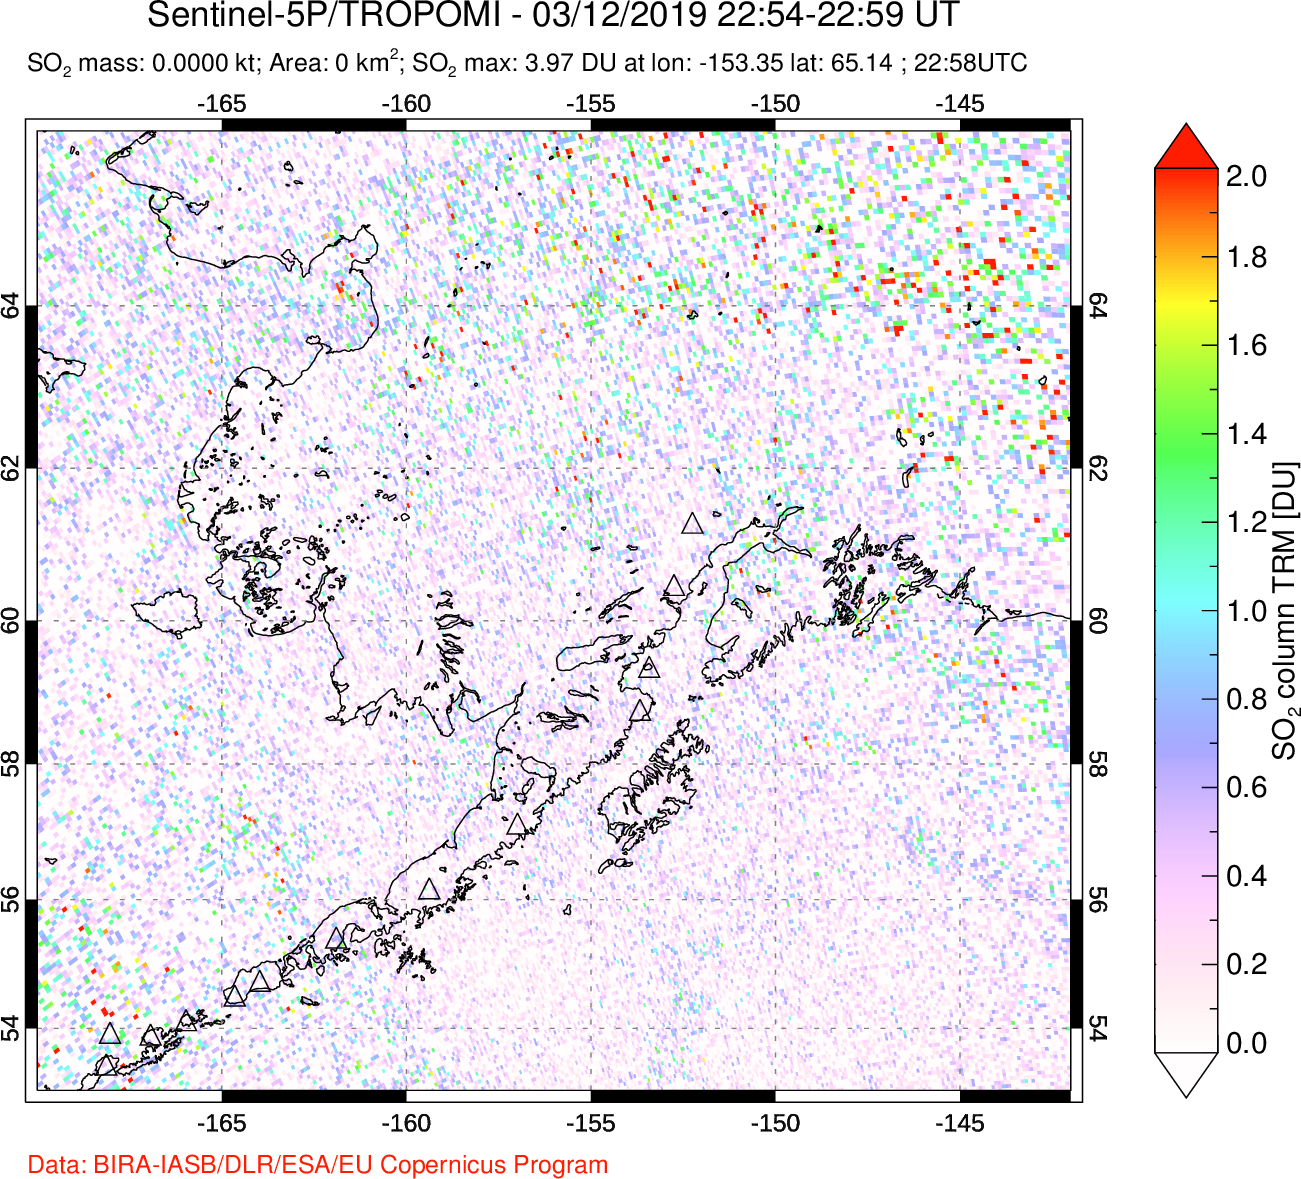 A sulfur dioxide image over Alaska, USA on Mar 12, 2019.